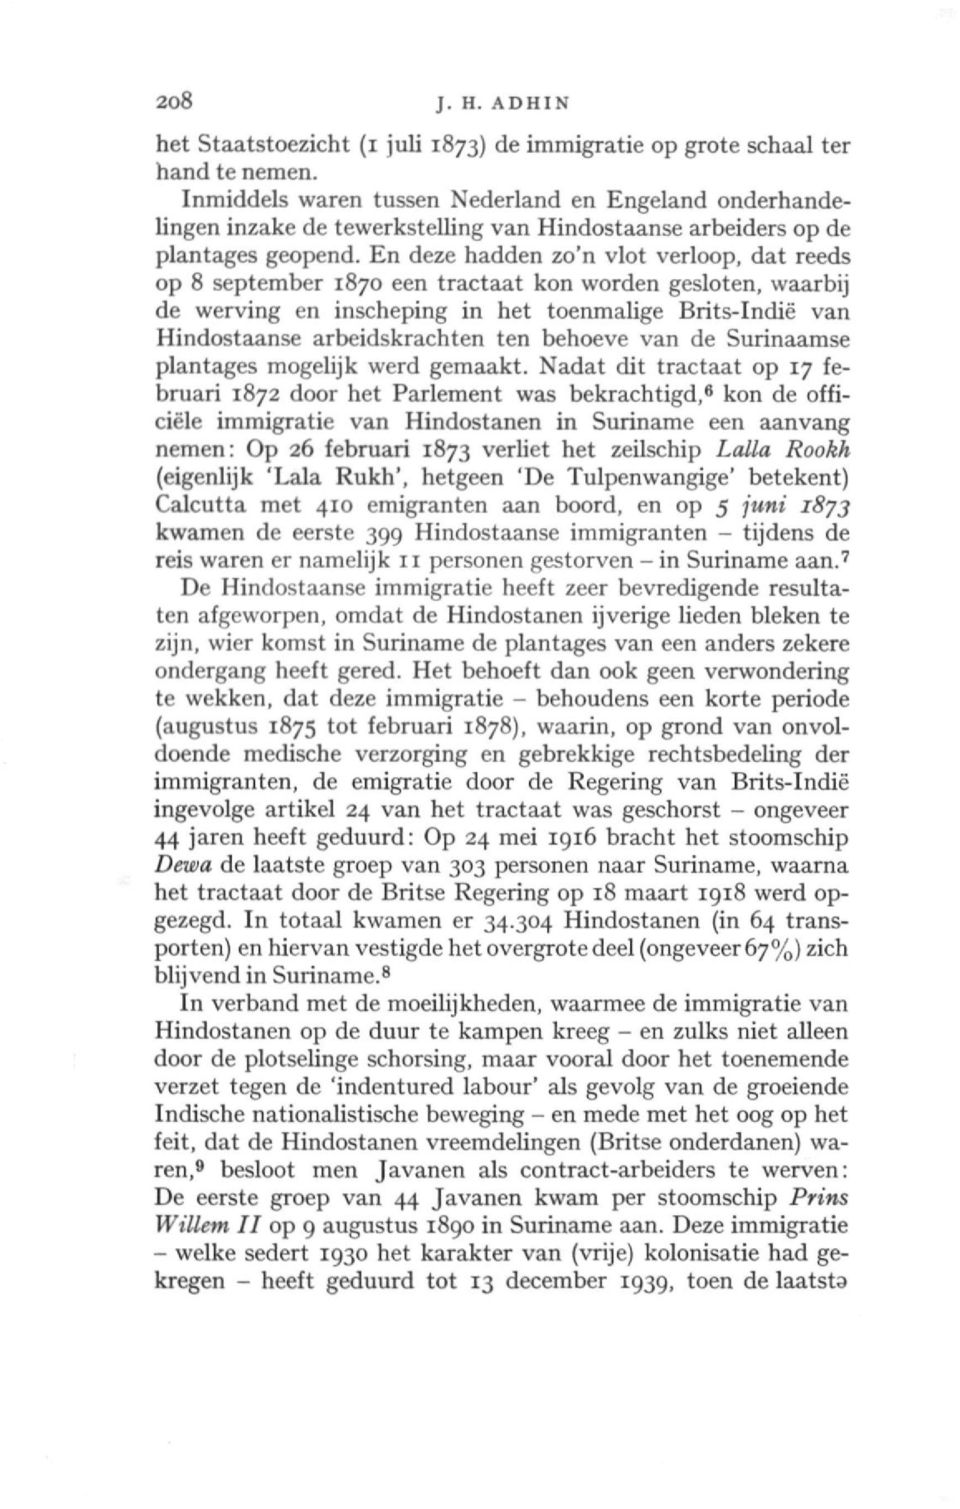 En deze hadden zo'n vlot verloop, dat reeds op 8 september 1870 een tractaat kon worden gesloten, waarbij de werving en inscheping in het toenmalige Brits-Indië van Hindostaanse arbeidskrachten ten